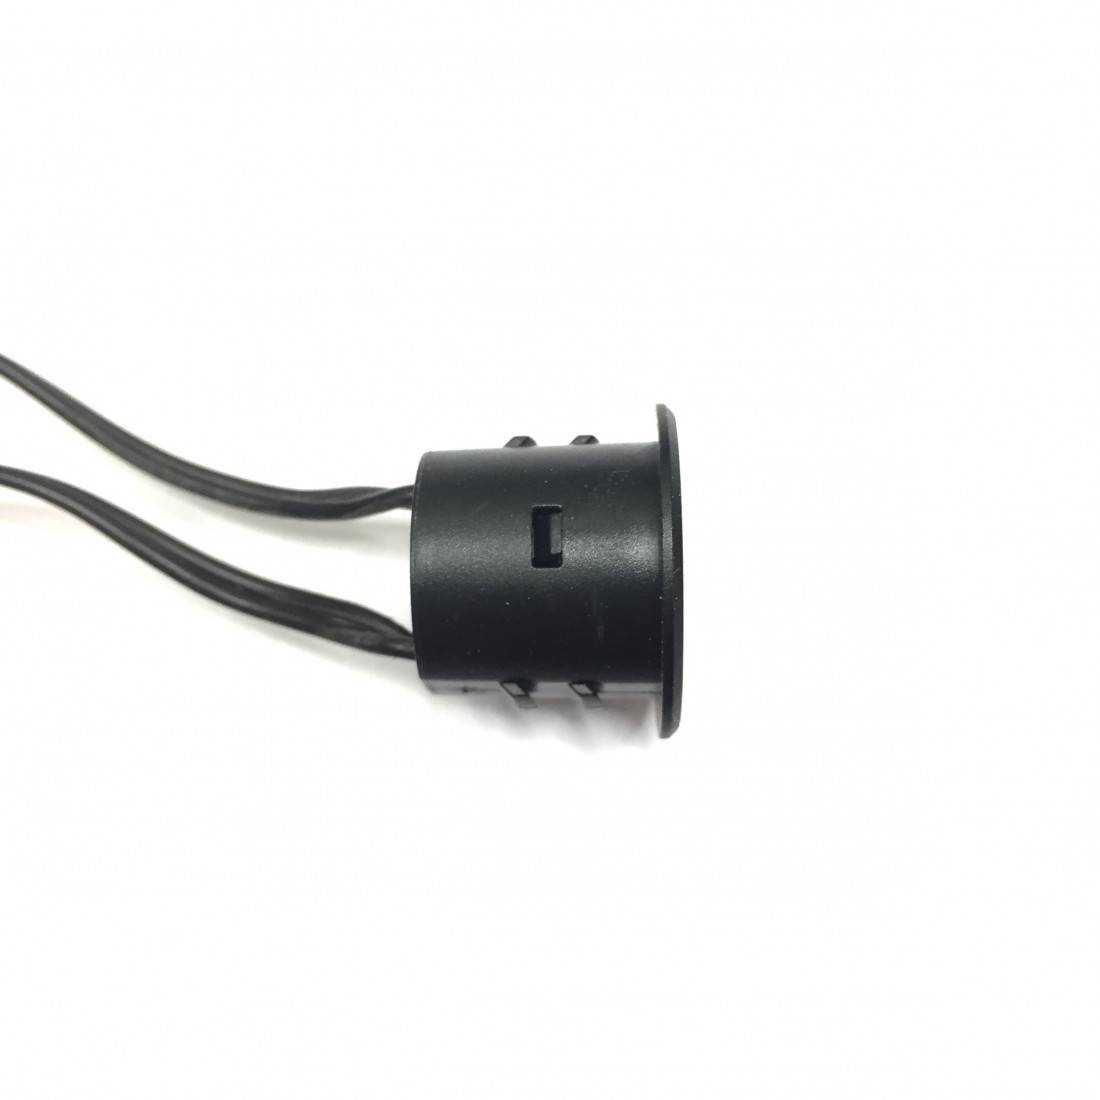 Interrupteur de variateur LED, variateur encastré pour LED et